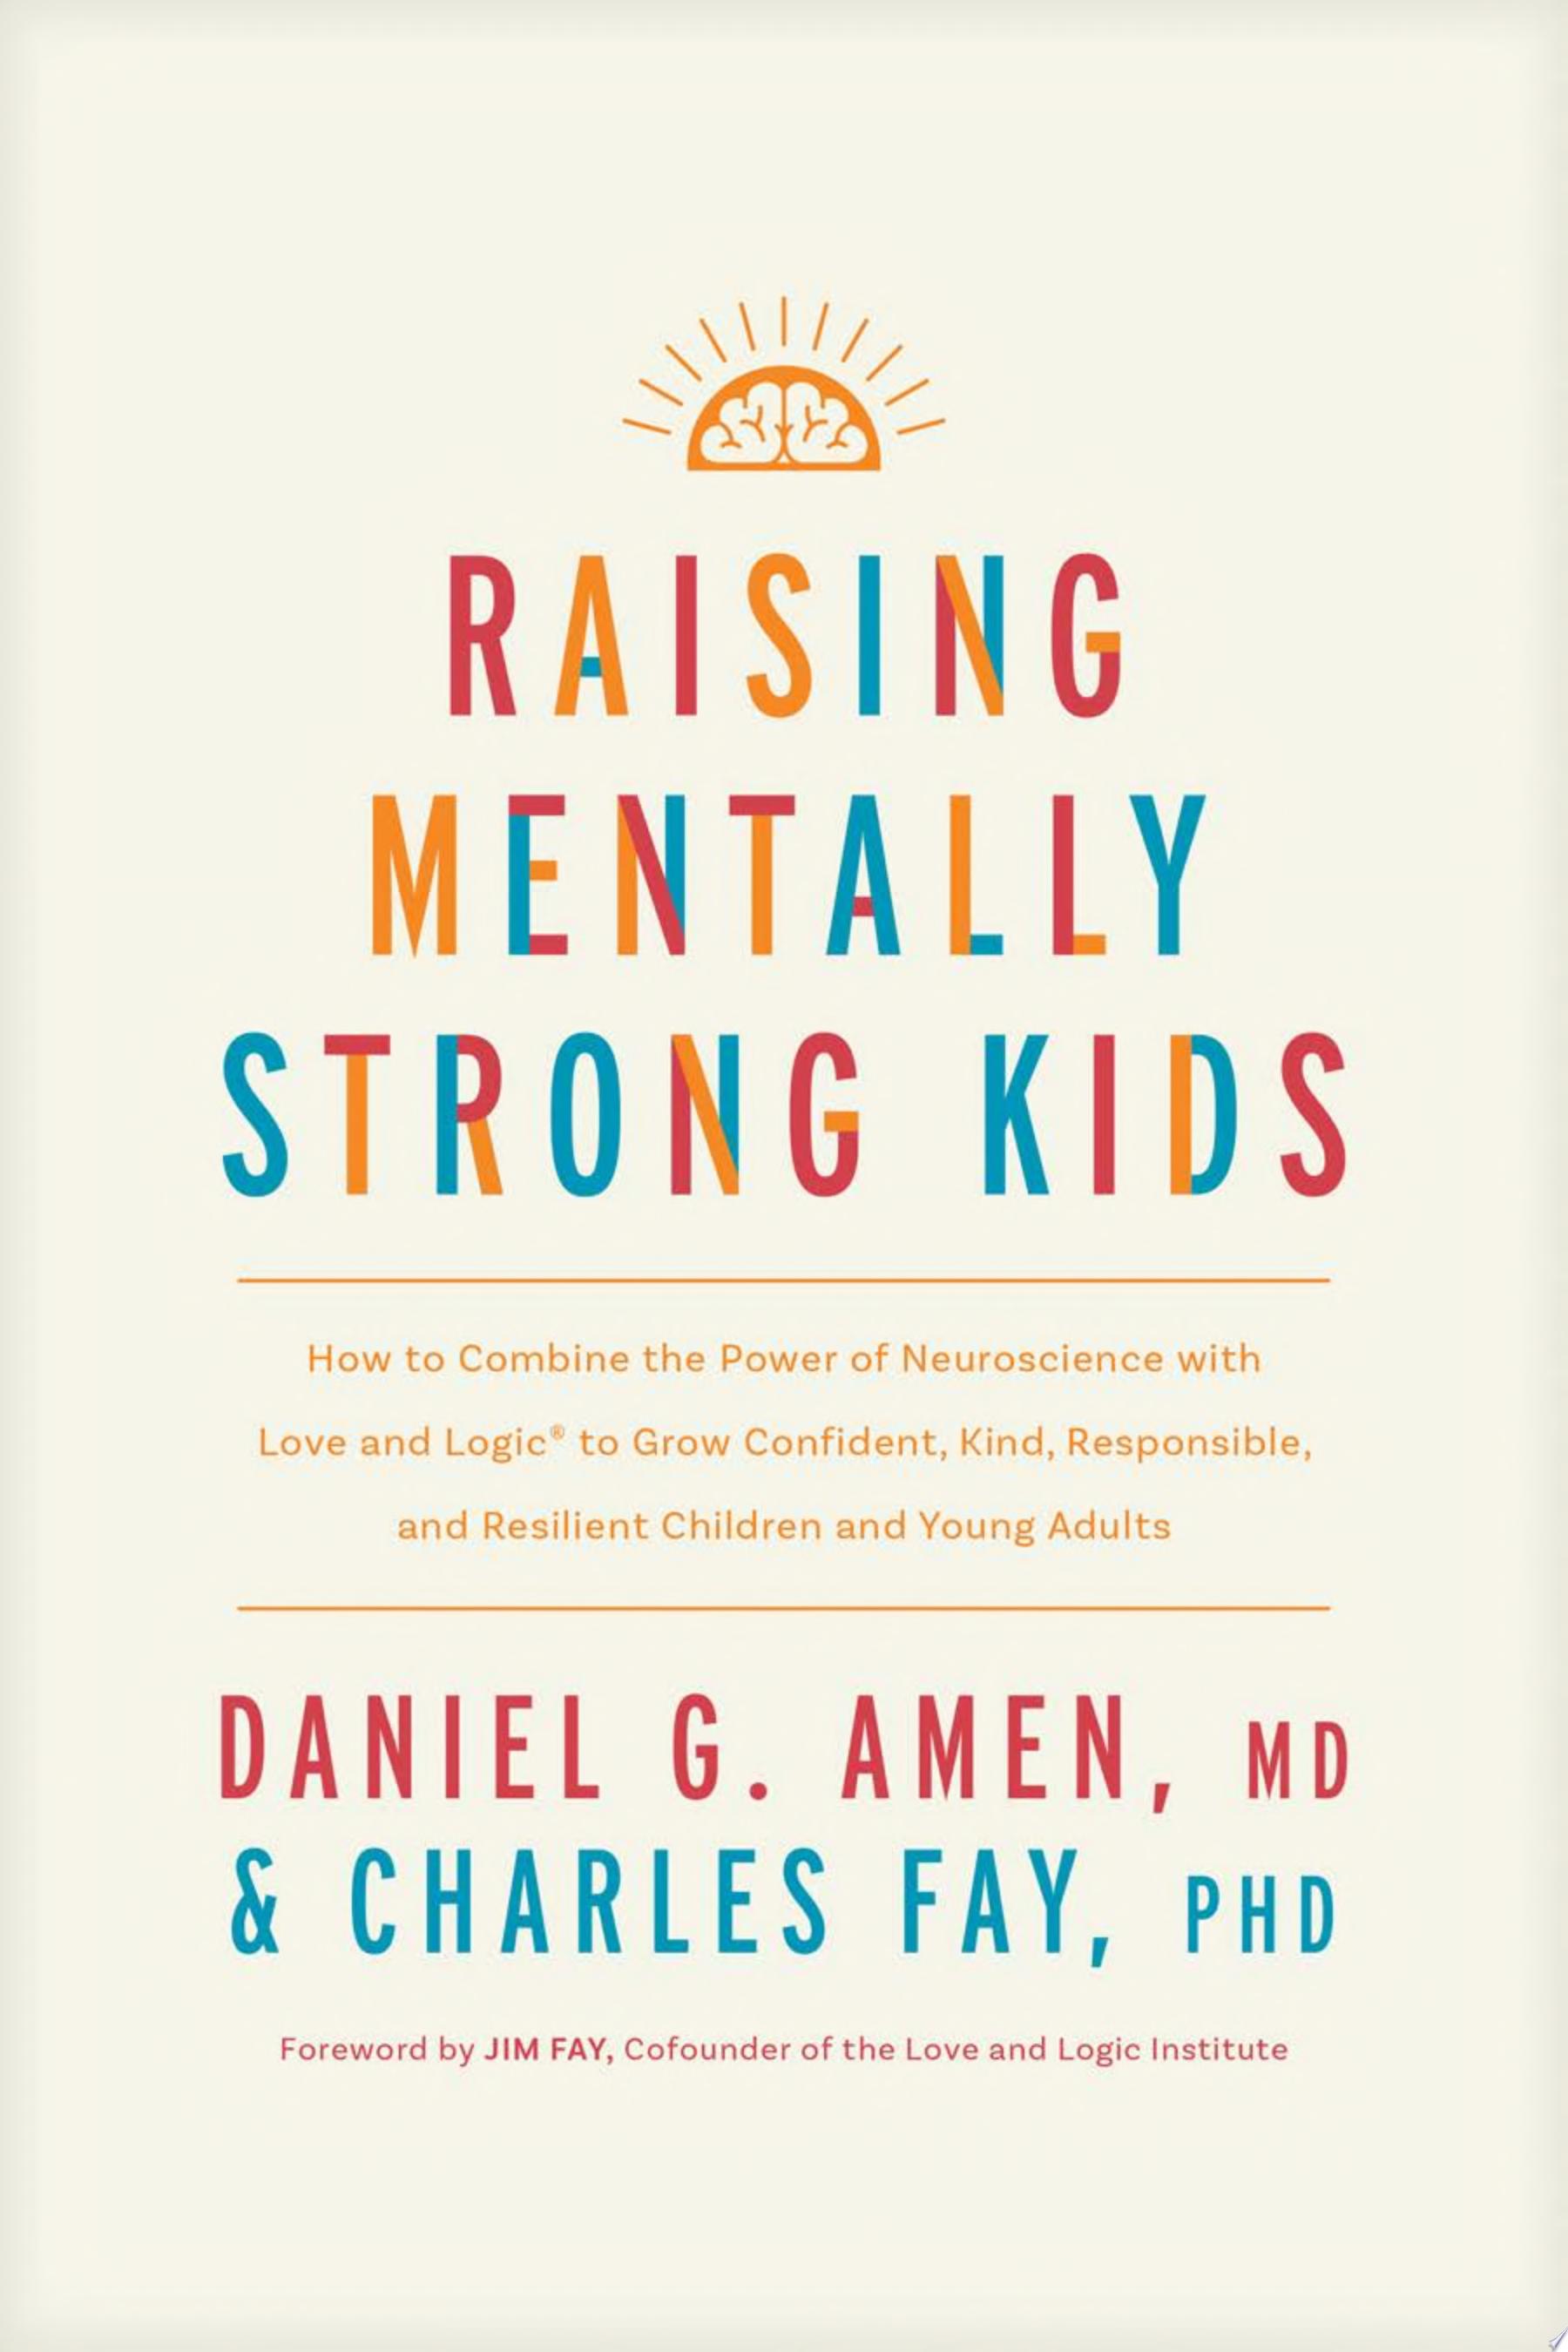 Image for "Raising Mentally Strong Kids"